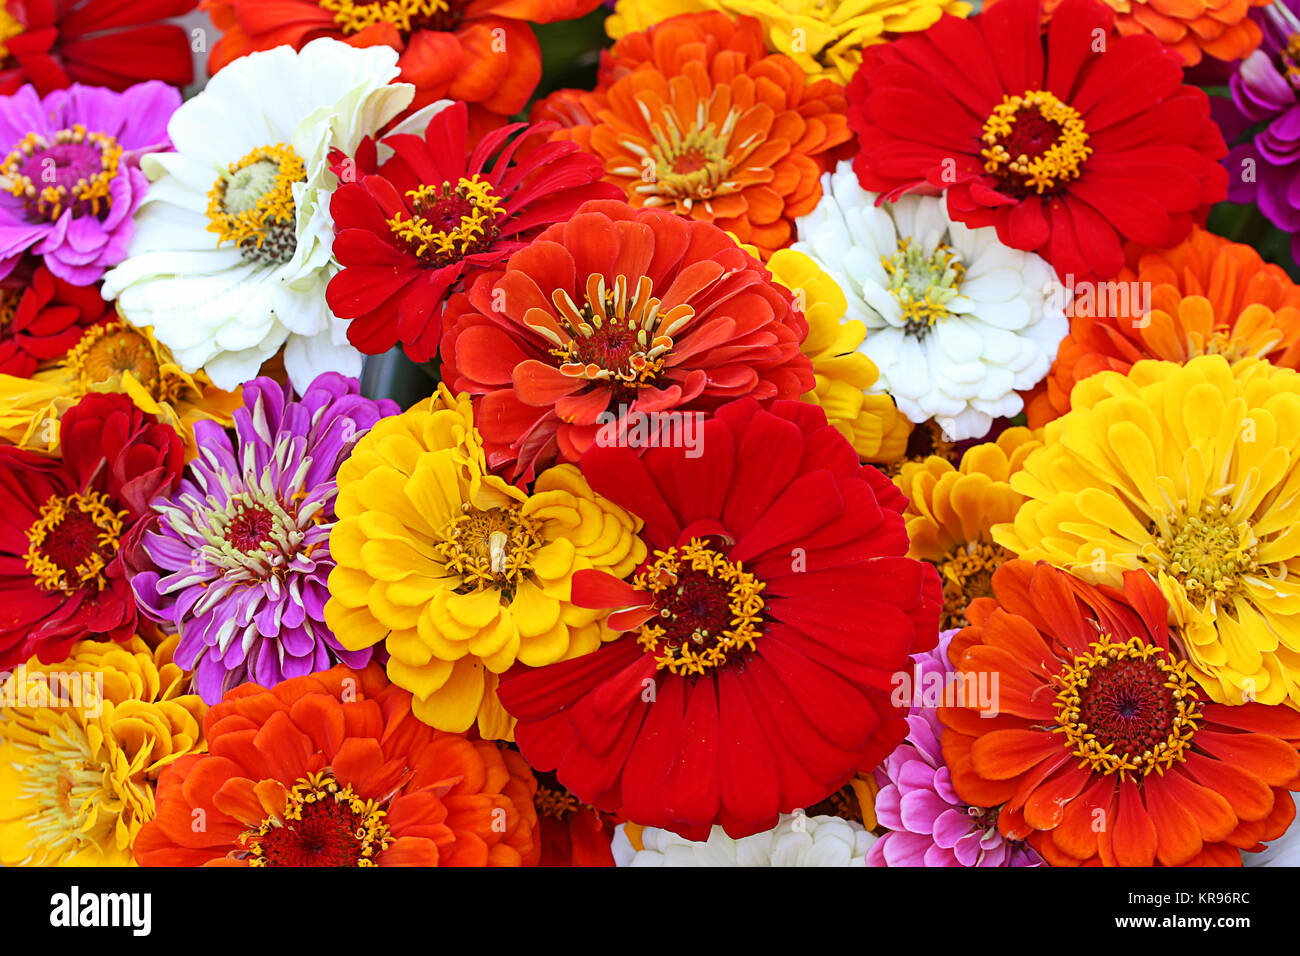 Farbenfrohe Sommer Blumenstrauß mit zinnien Stockfoto